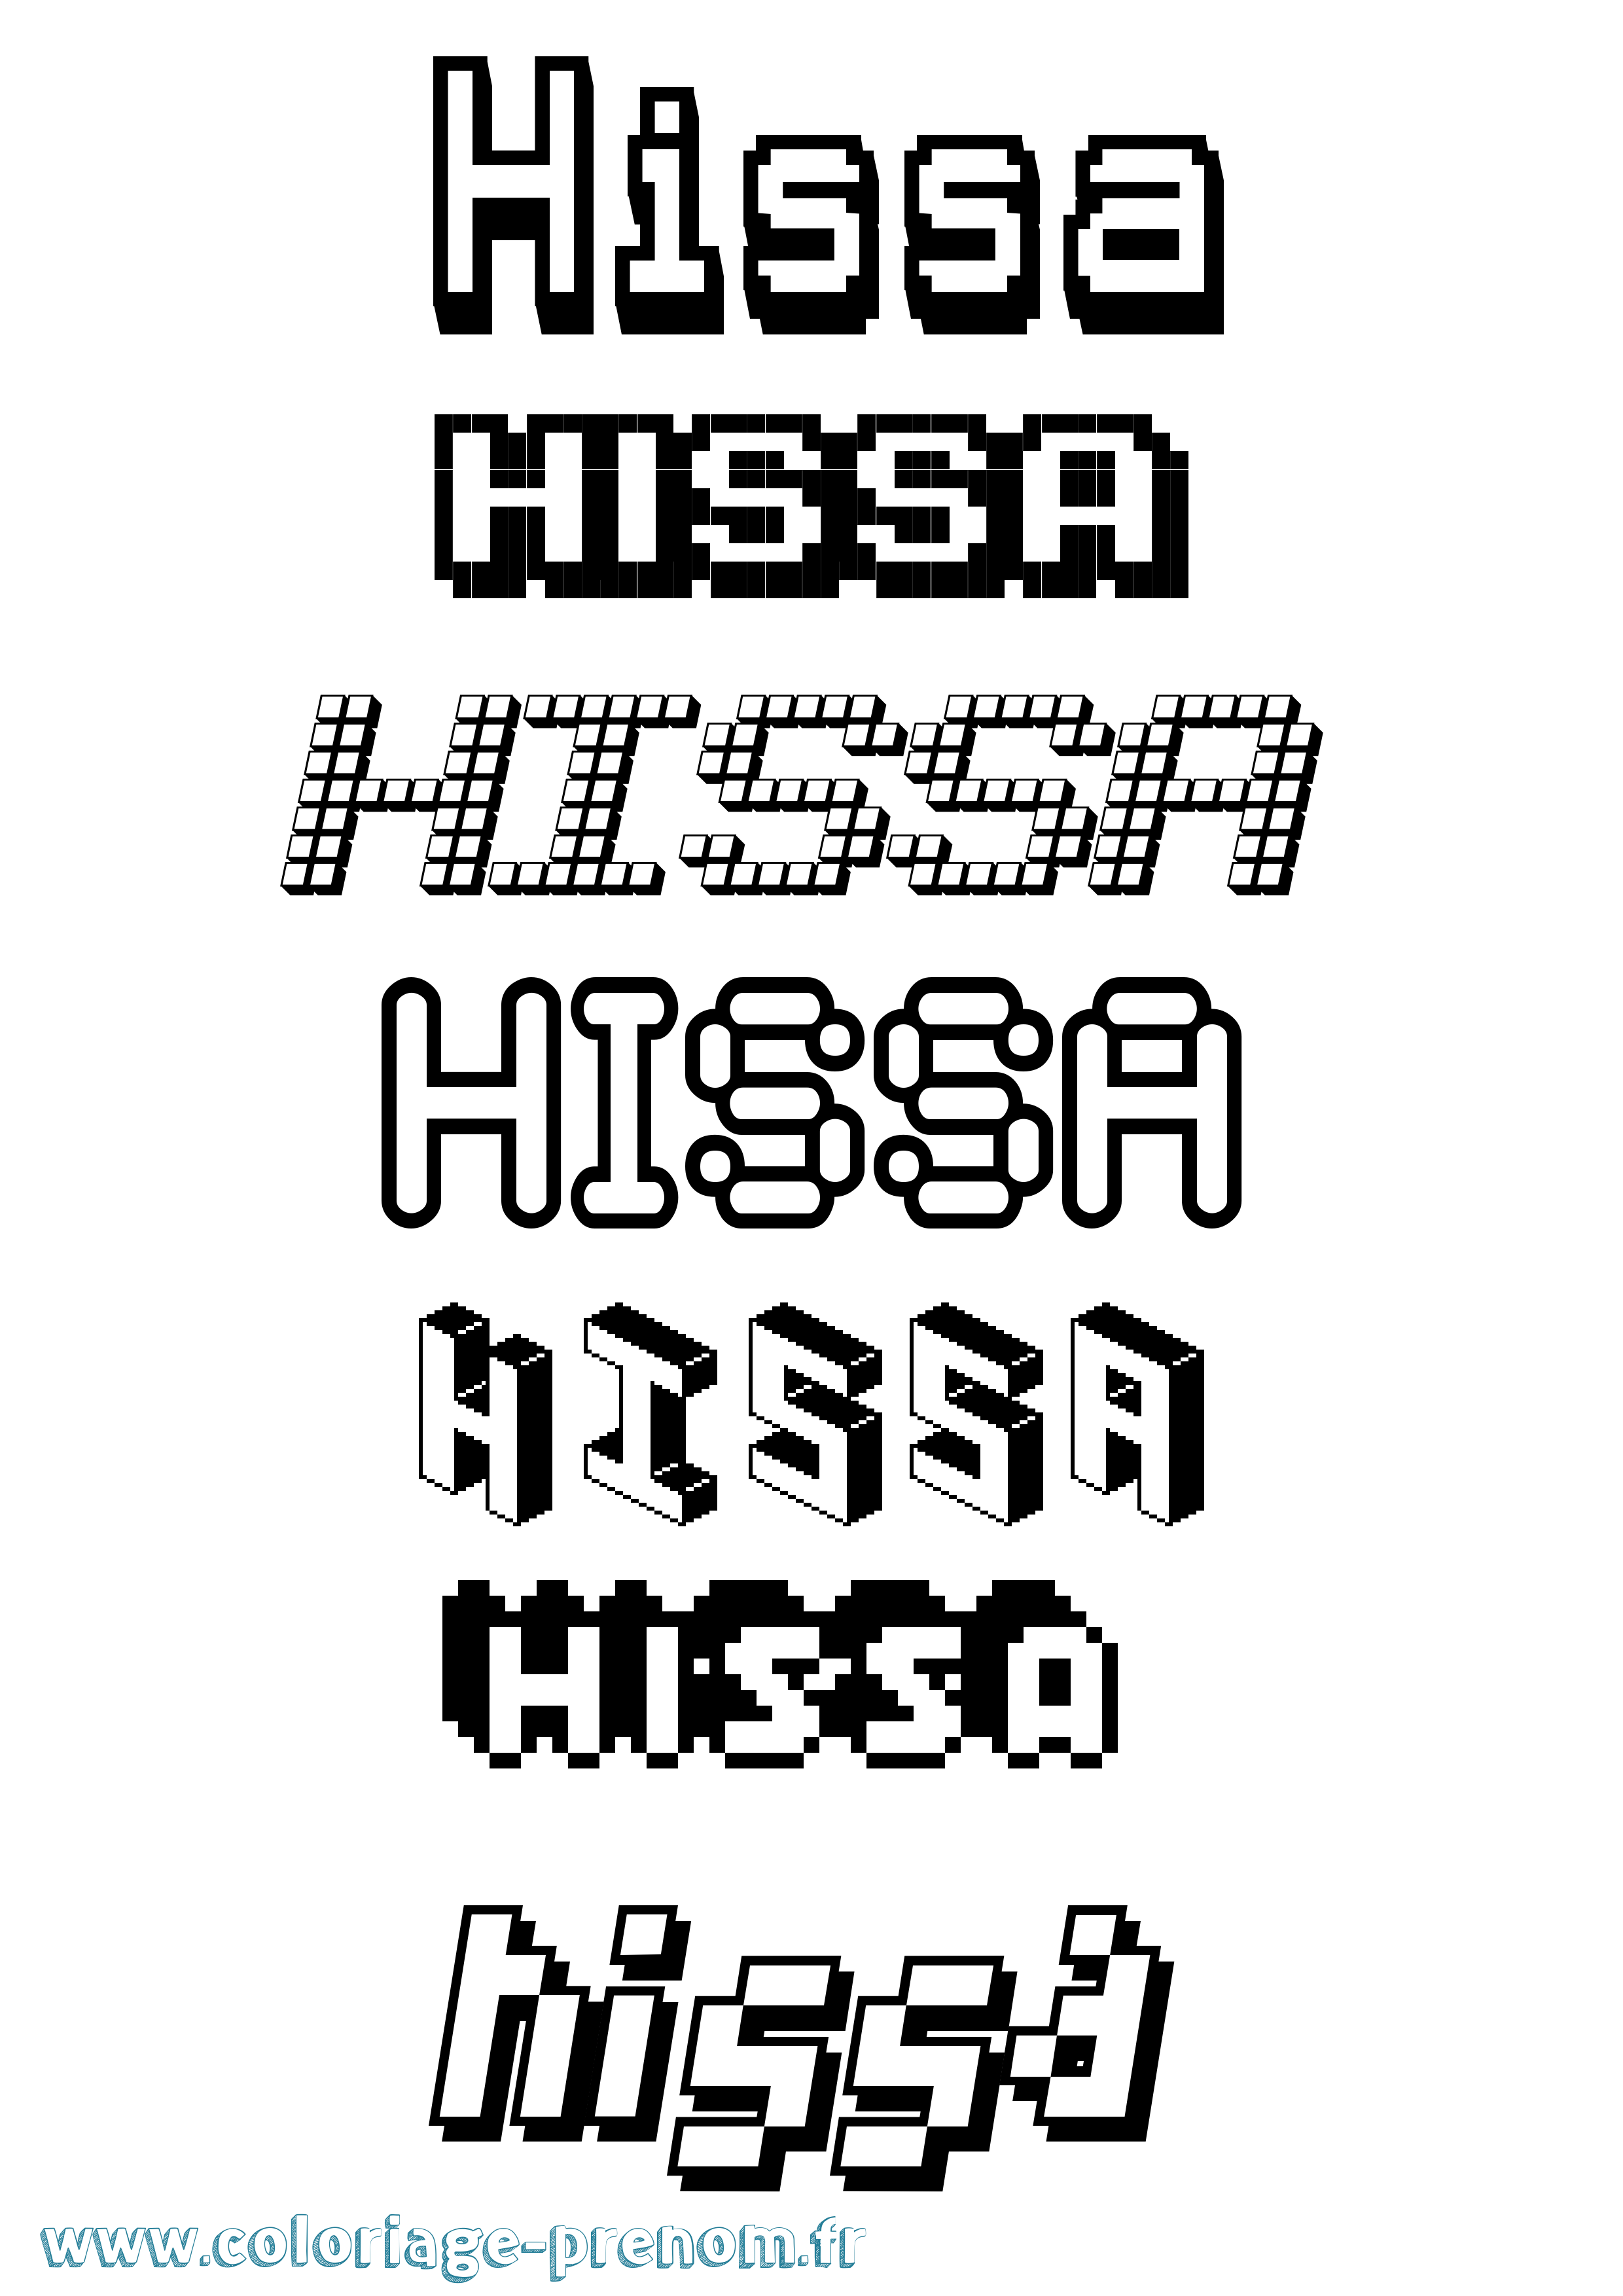 Coloriage prénom Hissa Pixel